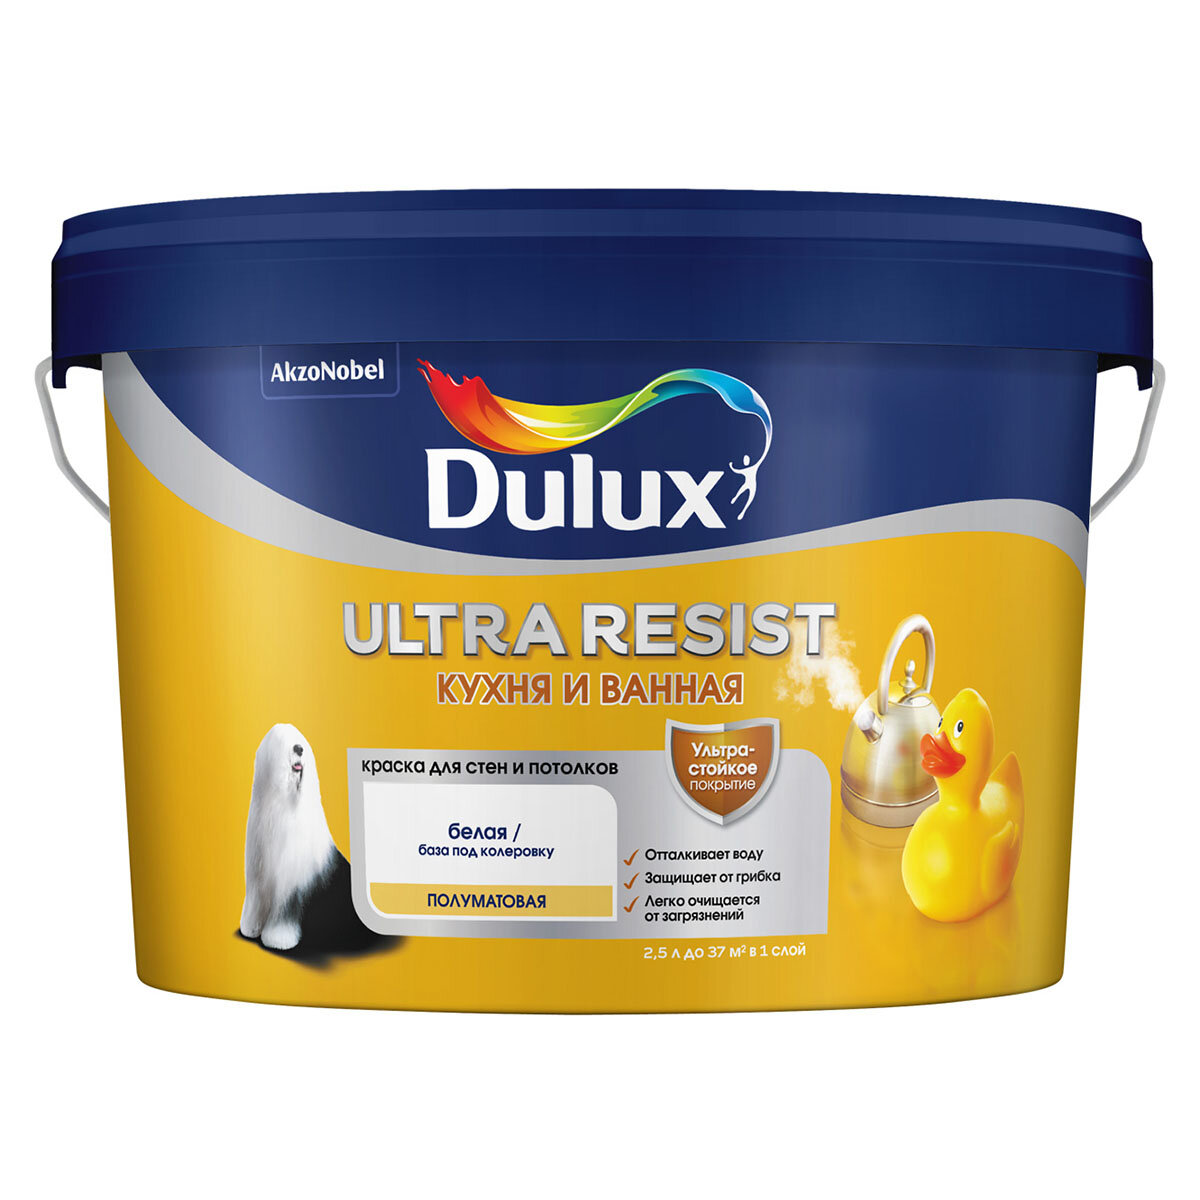 DULUX ULTRA RESIST кухня И ванная краска с защитой от плесени и грибка, матовая, база BW (2.5 л) new